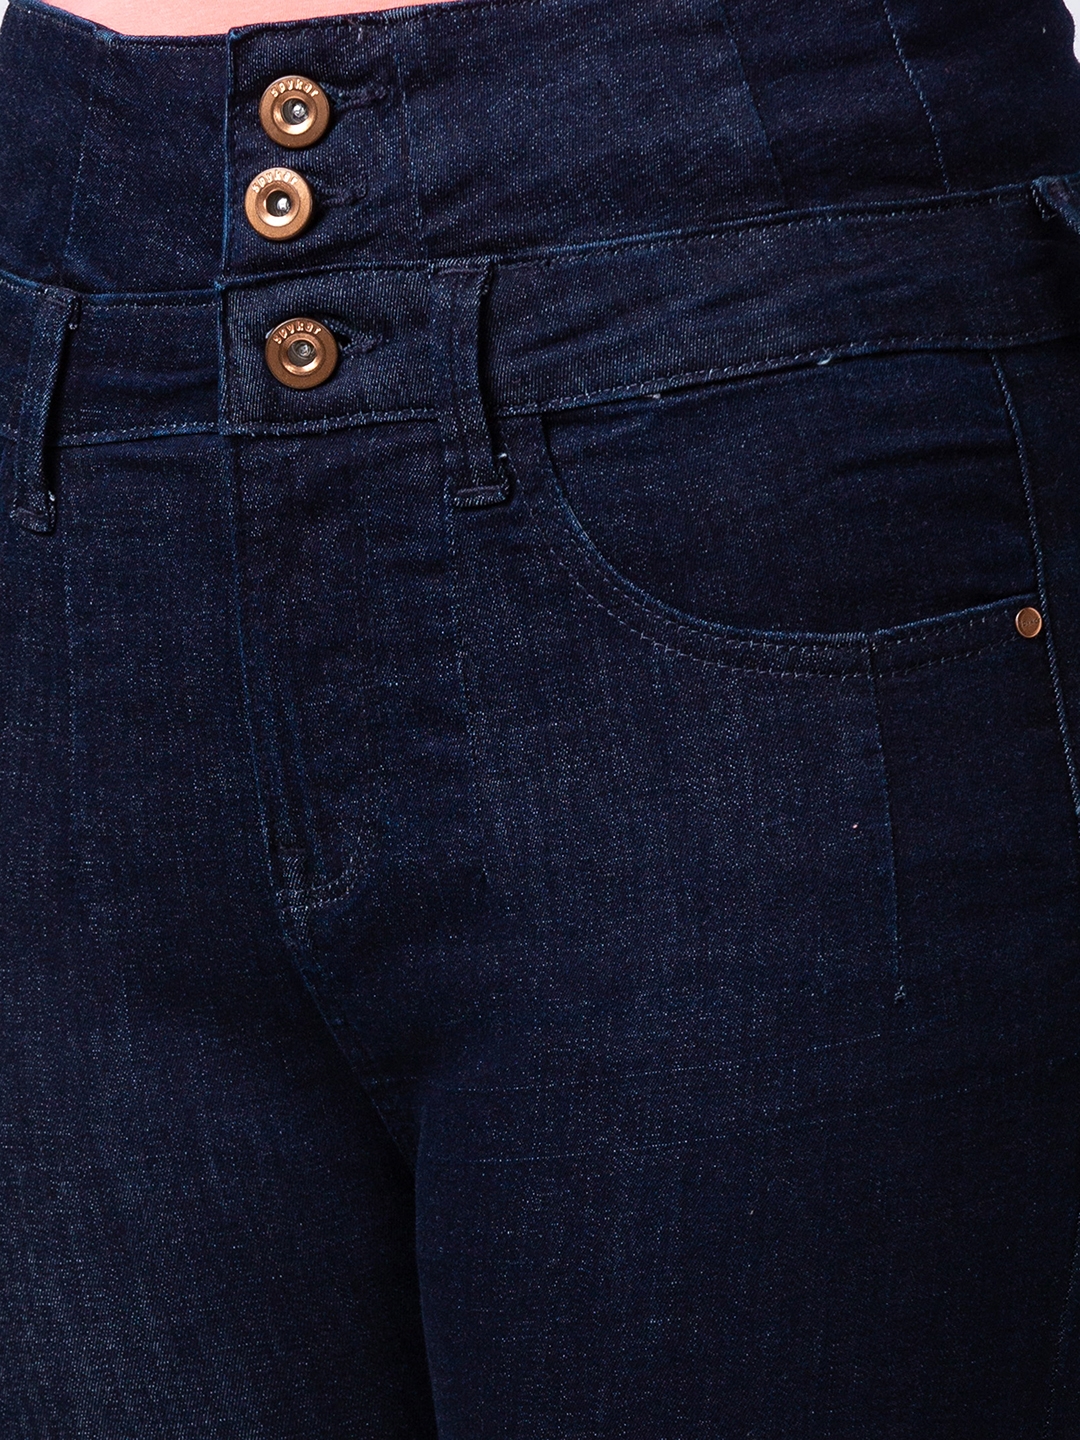 spykar | Women's Blue Lycra Solid Jeans 4